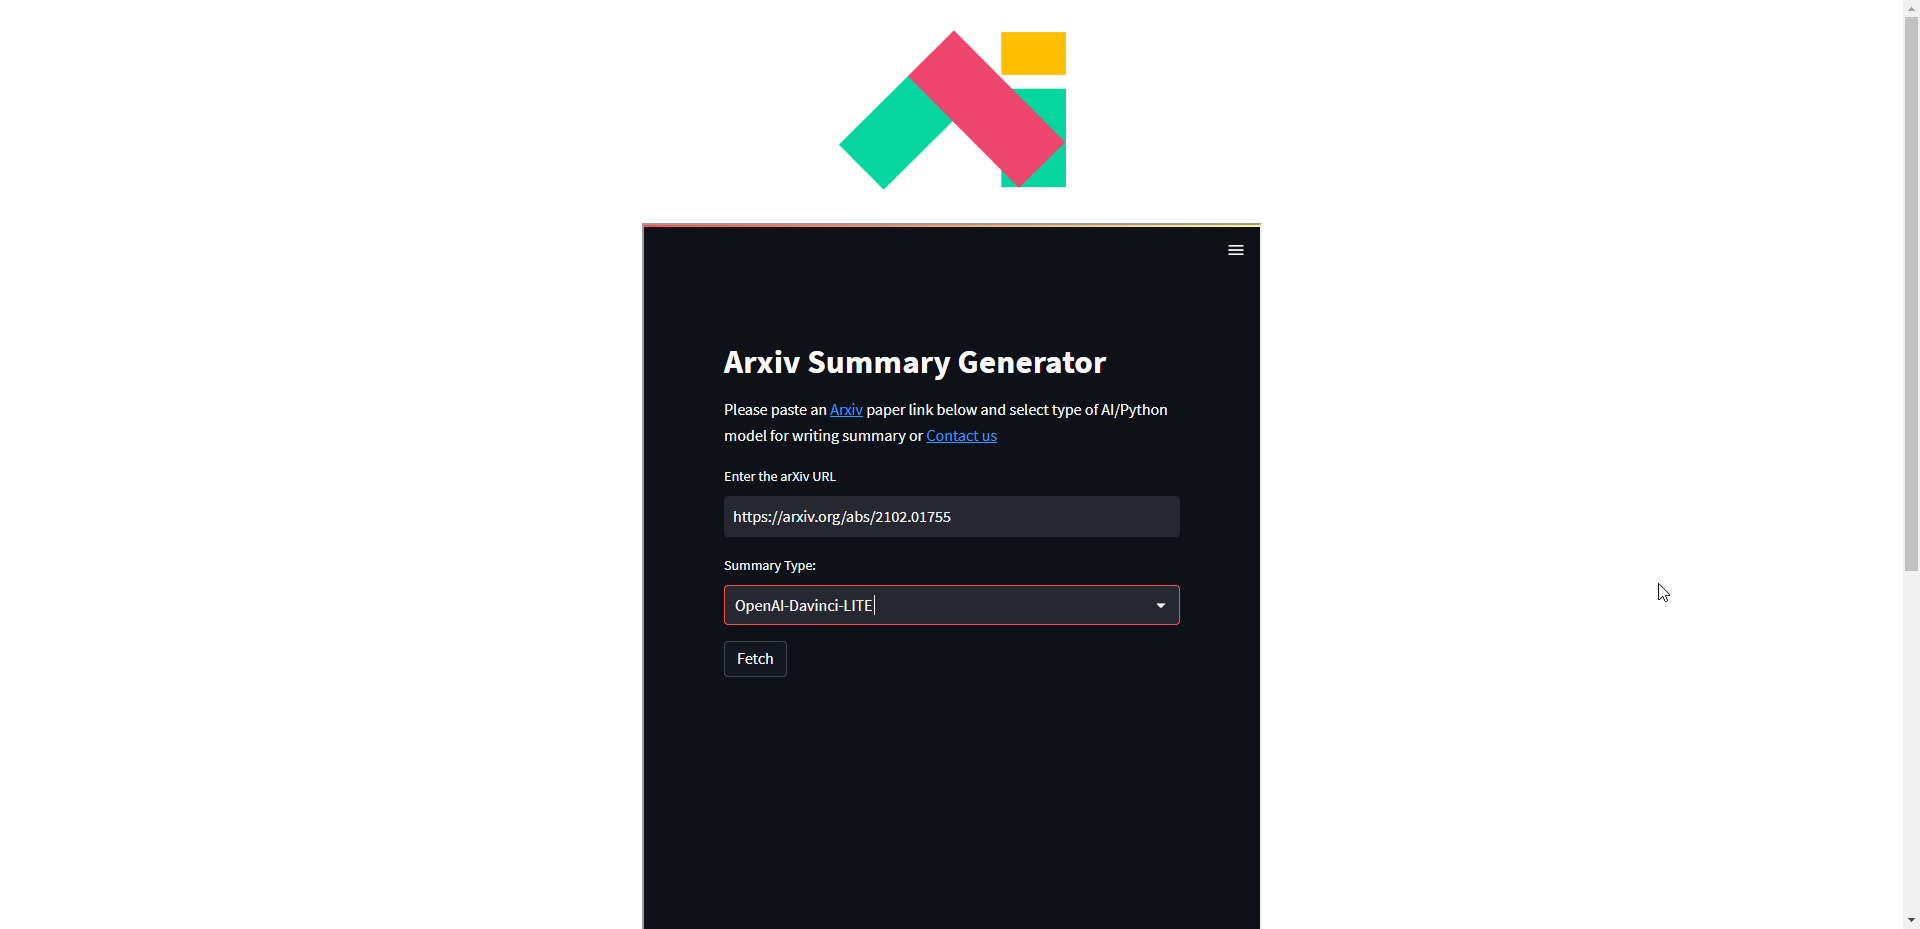 Générateur de résumé arXIV - Générer des résumés pour les articles ArXIV